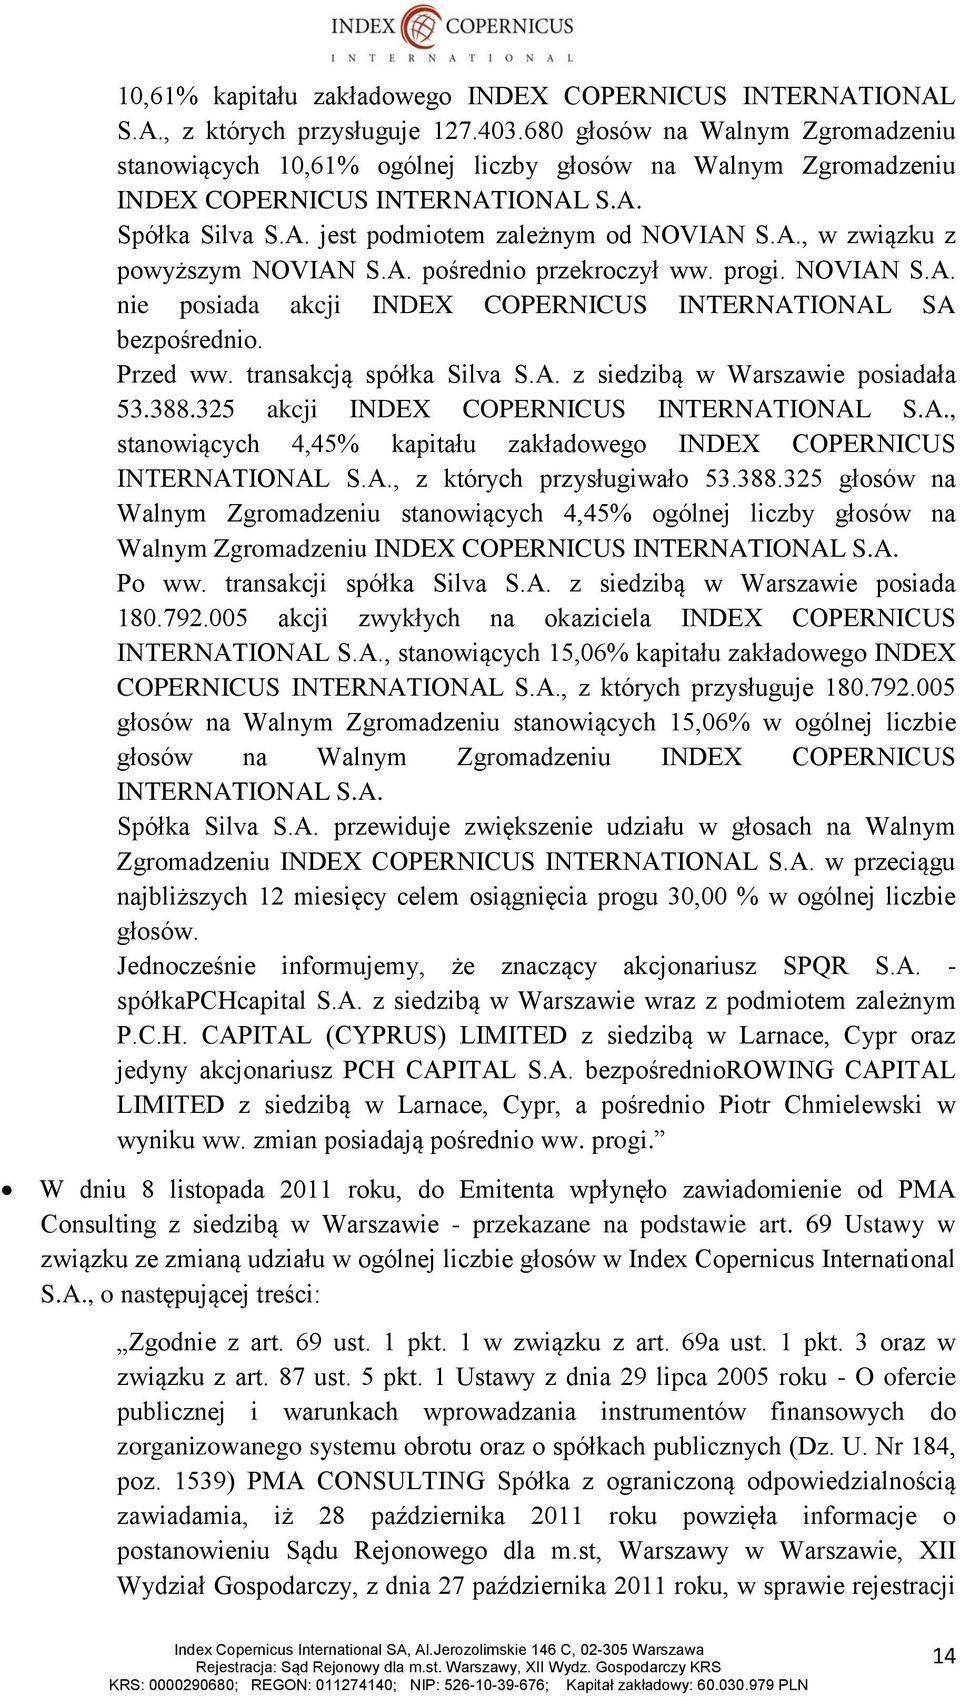 A. pośrednio przekroczył ww. progi. NOVIAN S.A. nie posiada akcji INDEX COPERNICUS INTERNATIONAL SA bezpośrednio. Przed ww. transakcją spółka Silva S.A. z siedzibą w Warszawie posiadała 53.388.